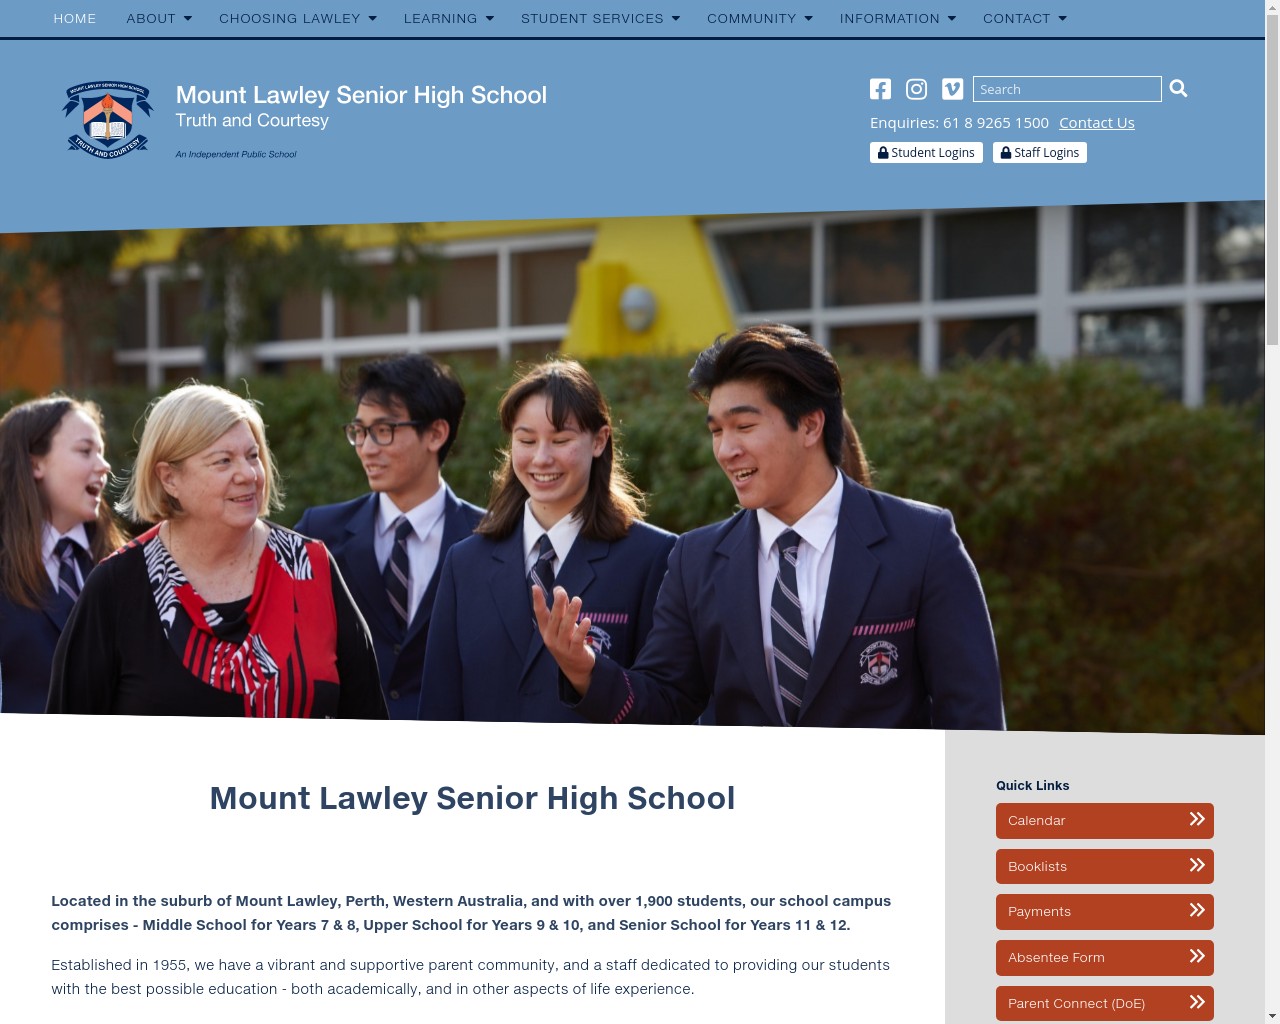 Mount Lawley Senior High School